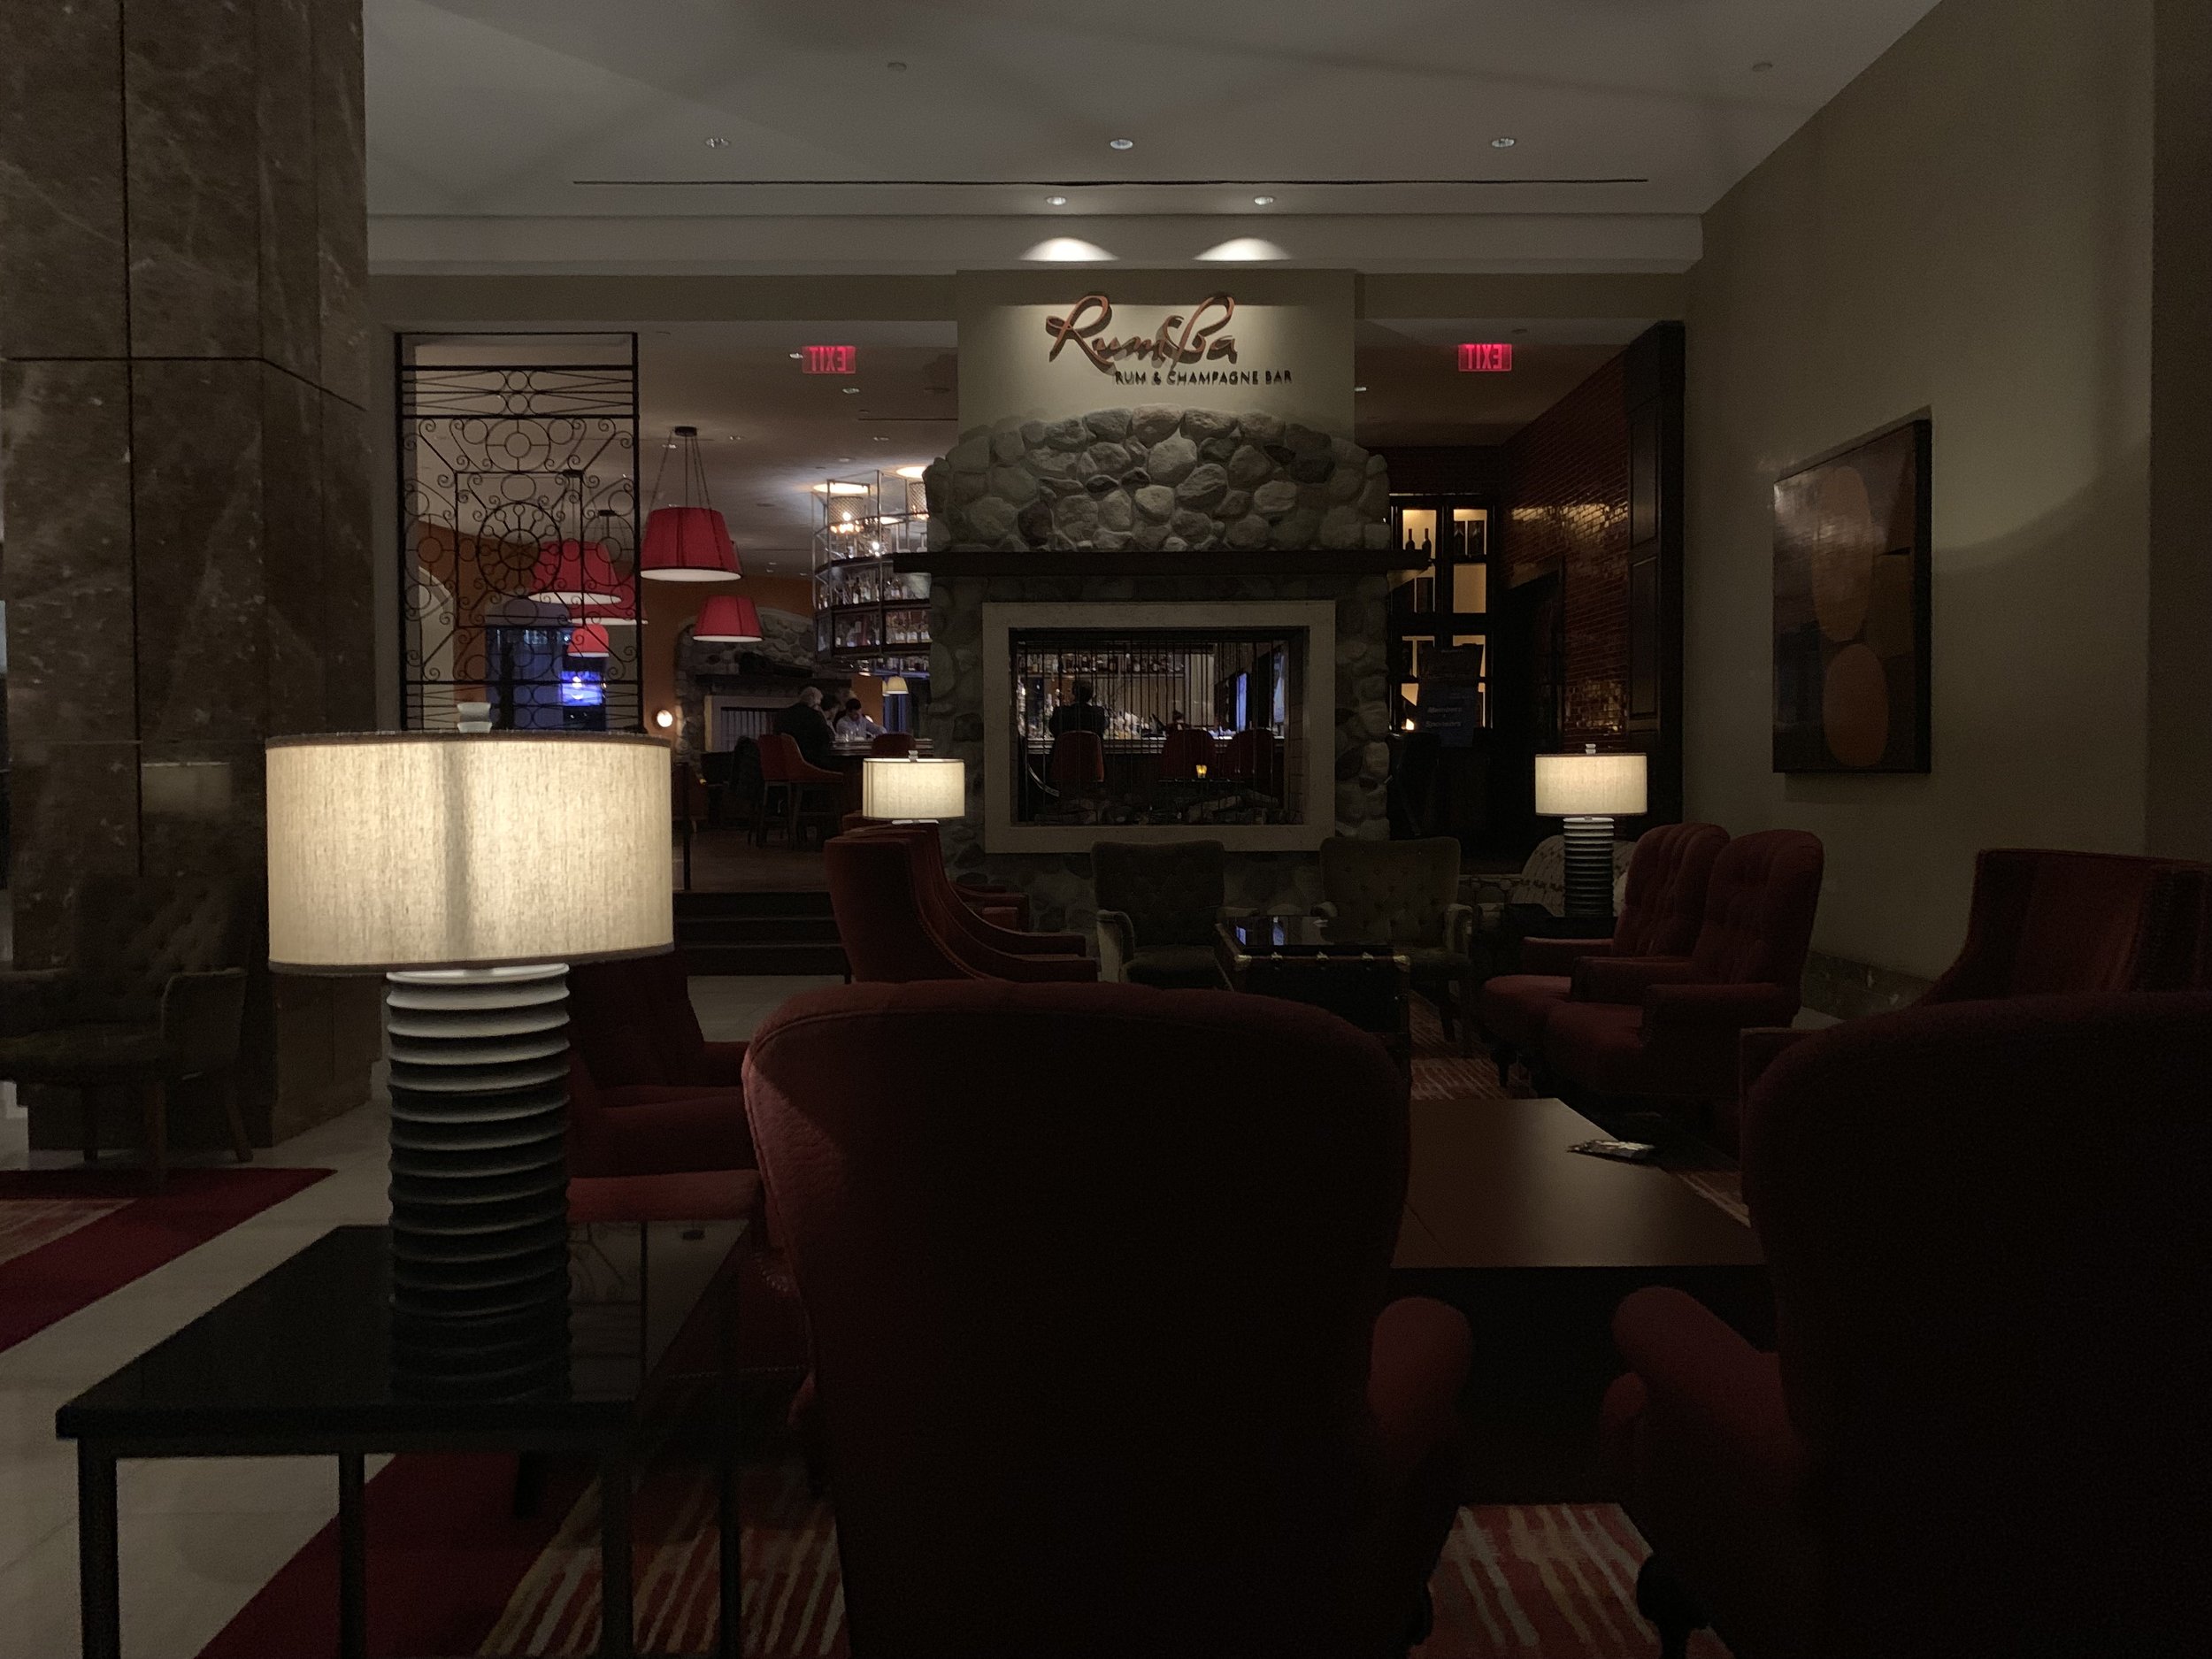 The Intercontinental Hotel - Boston, MA